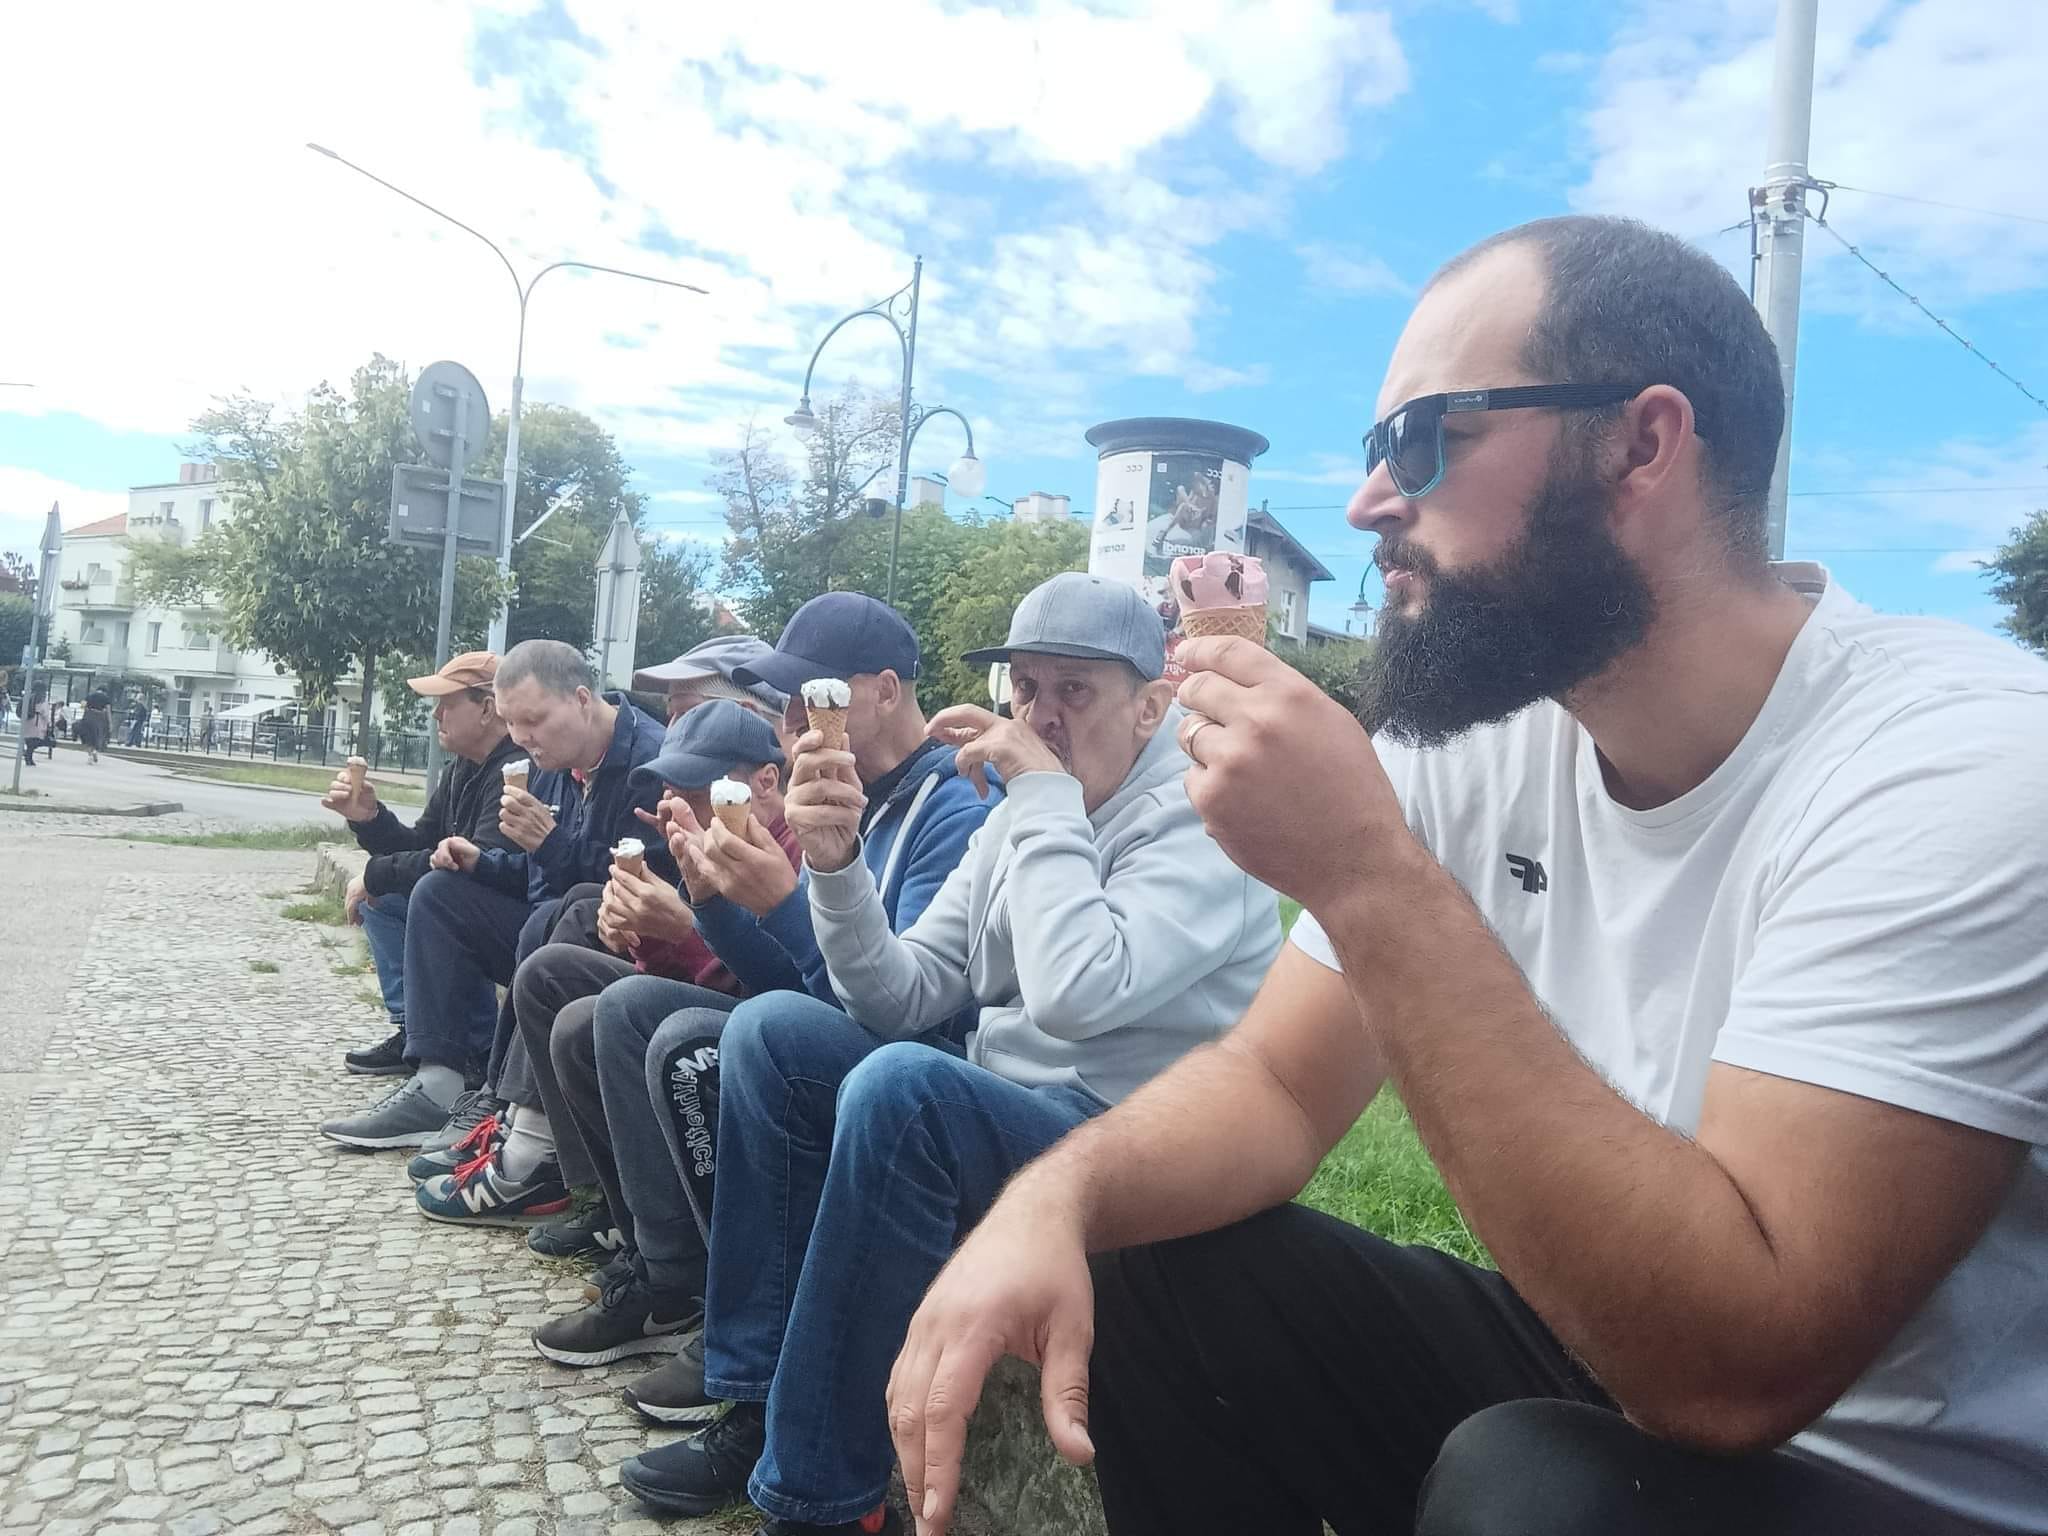 Grupa mężczyzn siedząca razem na świeżym powietrzu i jedząca lody. W tle miasto.